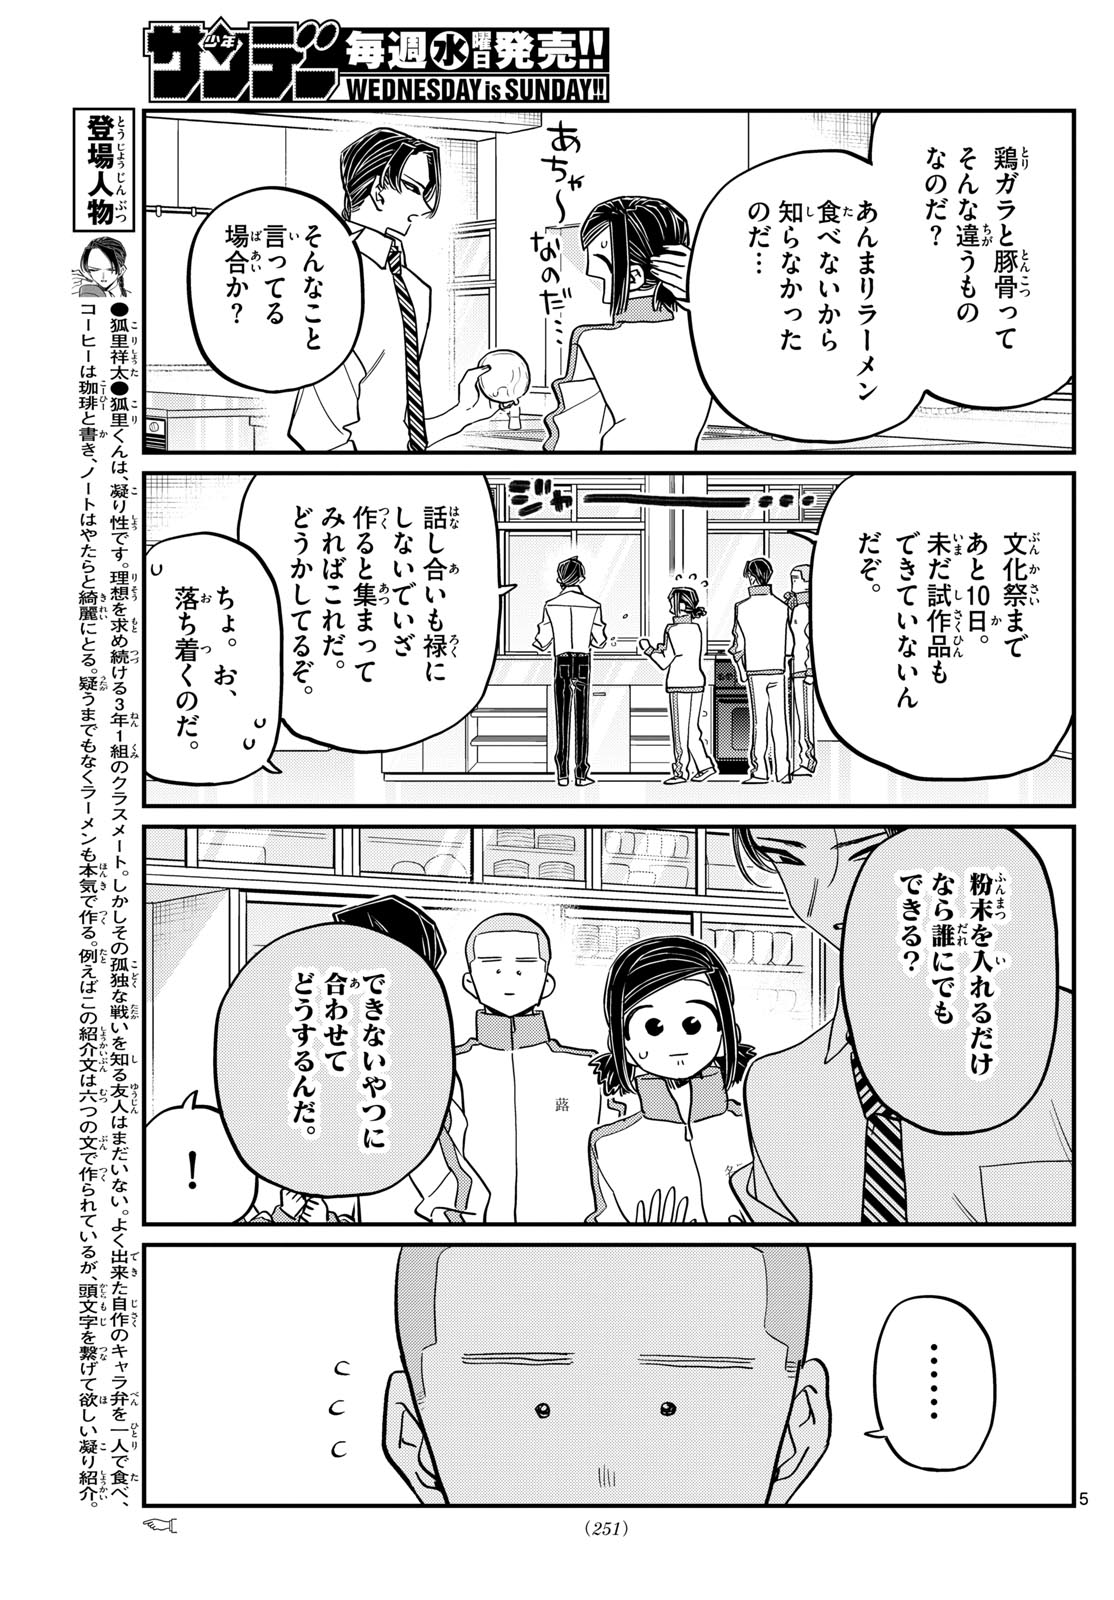 Komi-san wa Komyushou Desu - Chapter 449 - Page 5